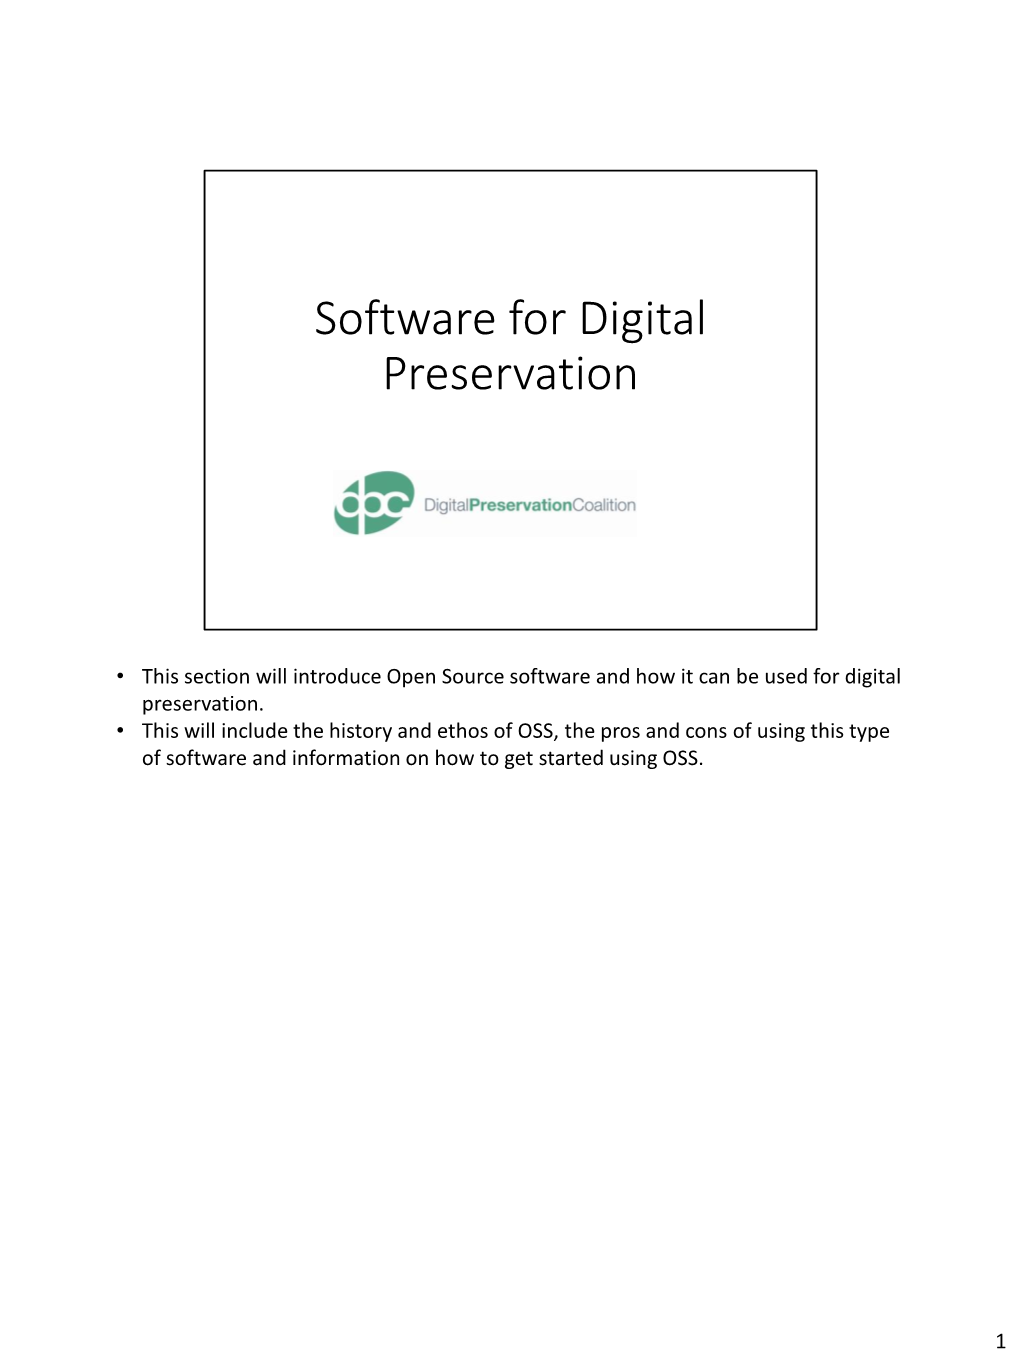 Software for Digital Preservation